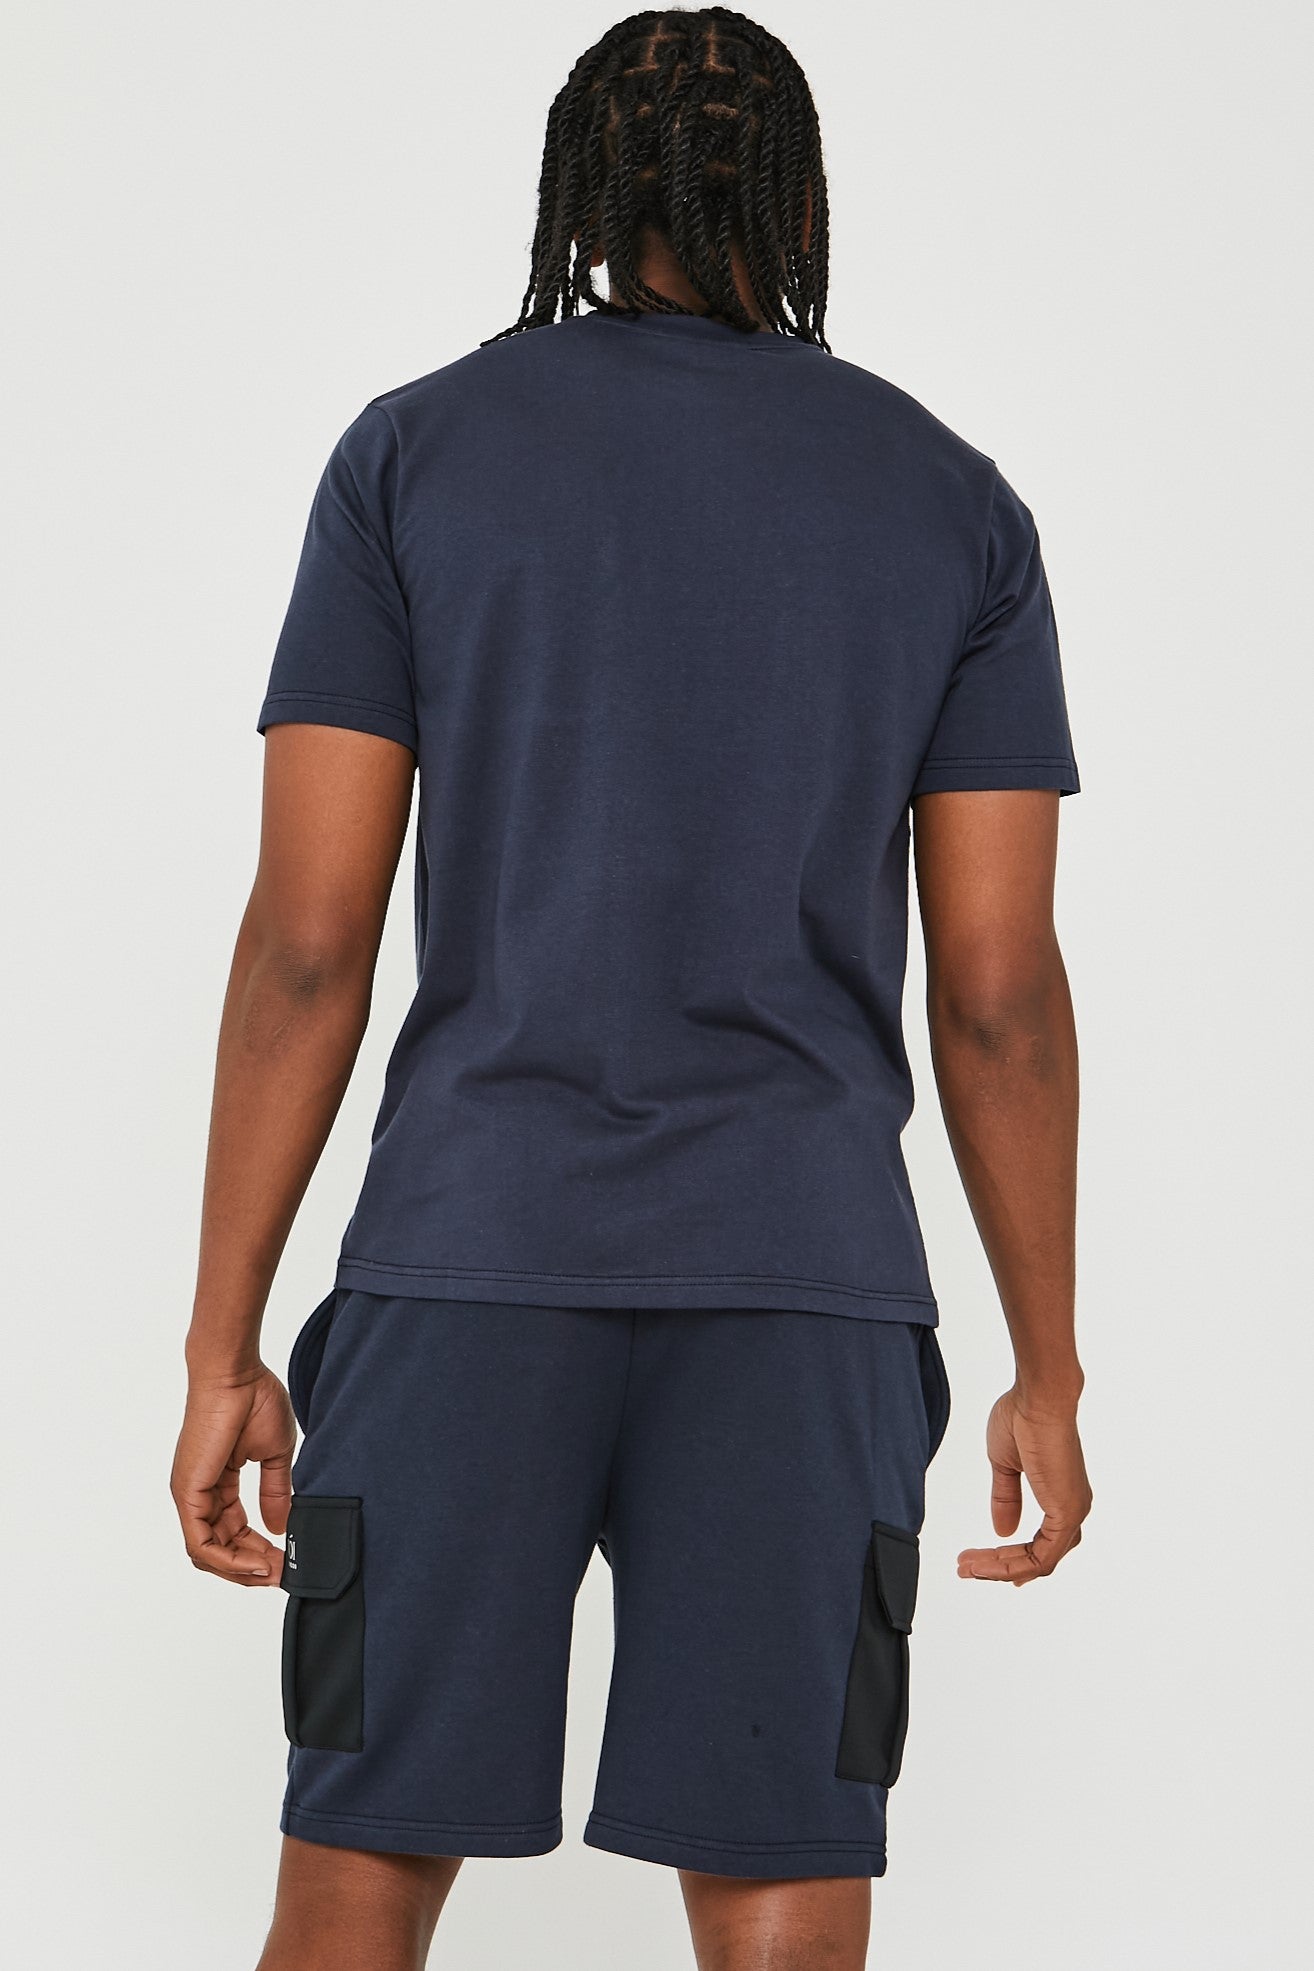 Mell Street T-Shirt & Short Set - Navy